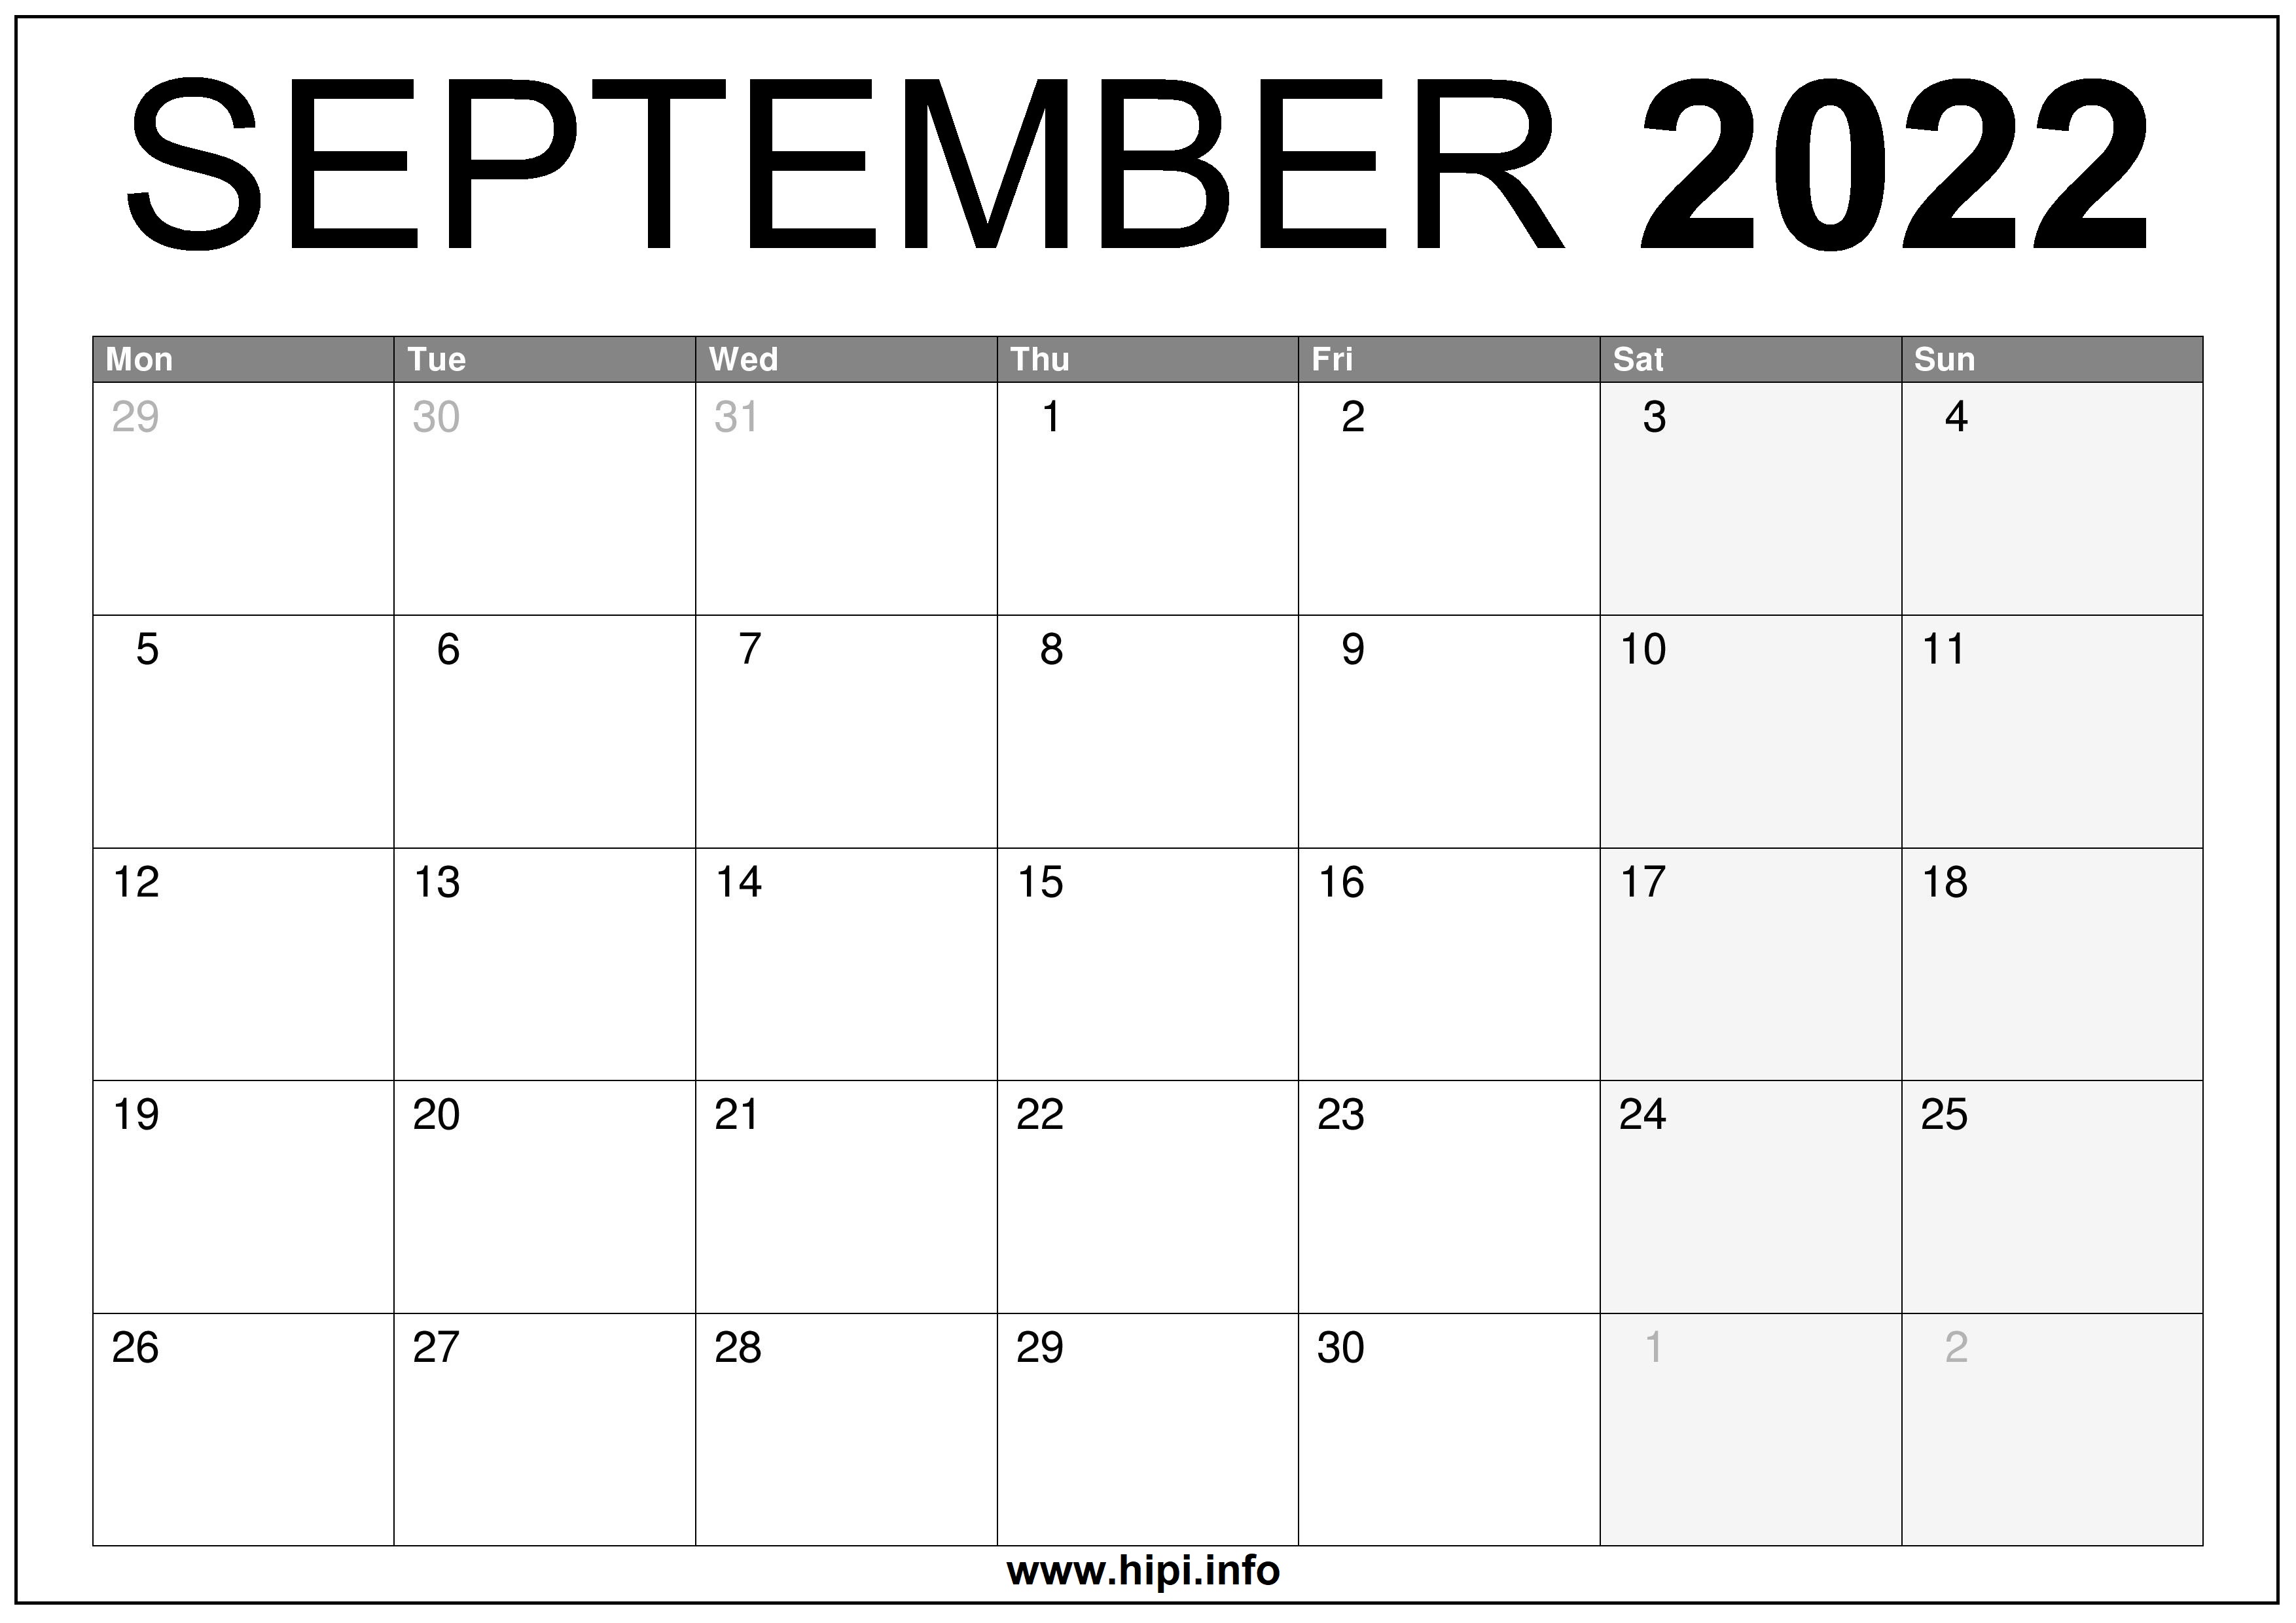 September 2022 Calendar Printable Free September 2022 Uk Calendar Printable Free - Hipi.info | Calendars Printable  Free